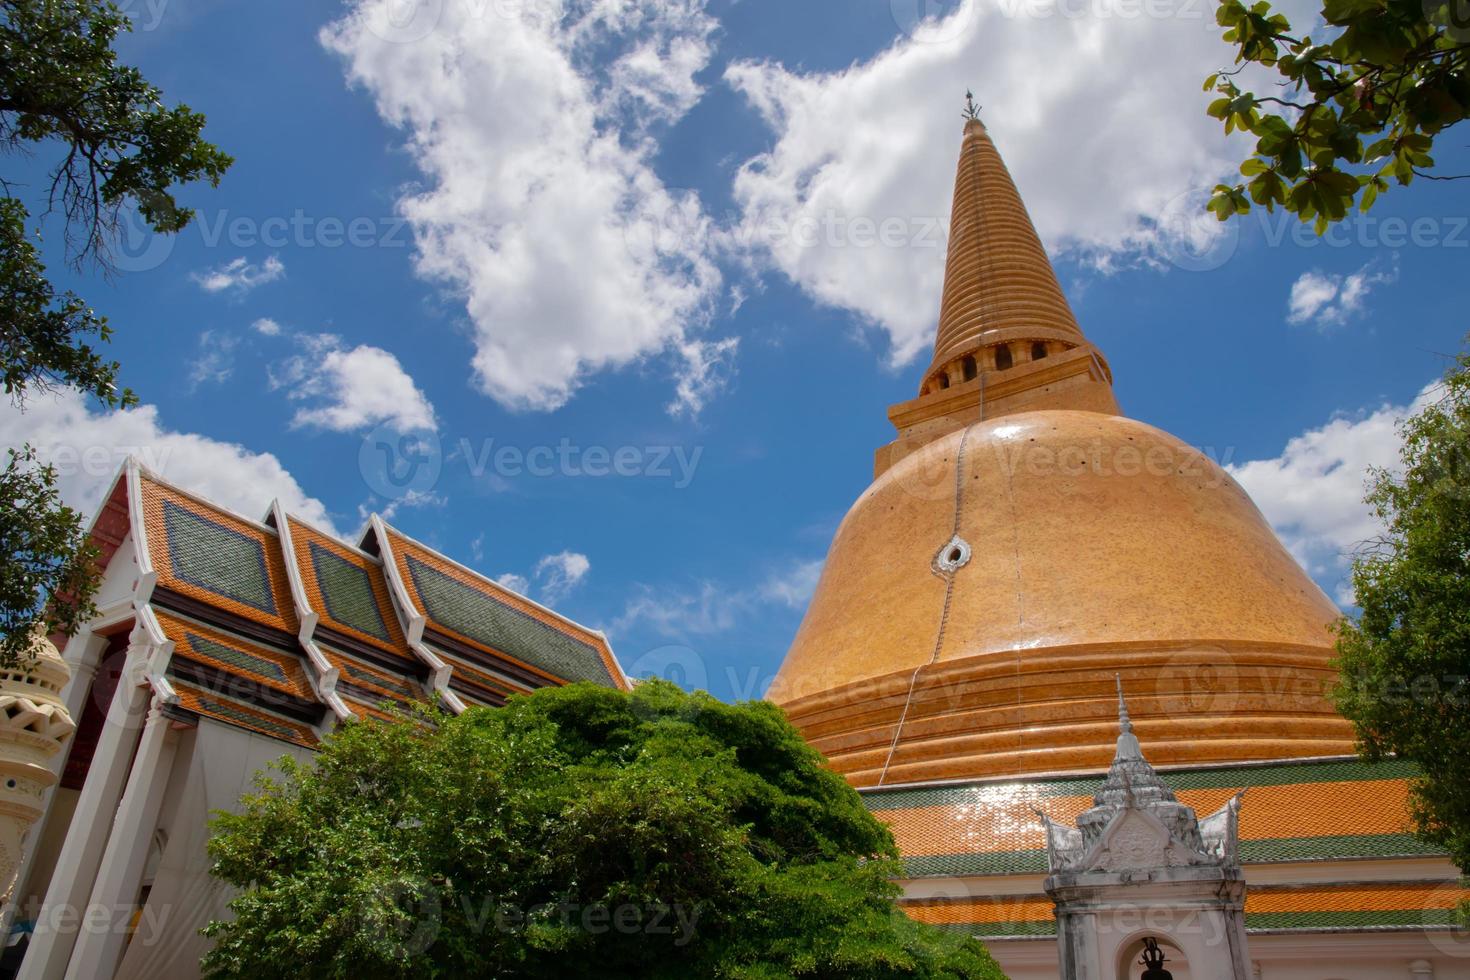 känd gammal pagod och tempel i thailand, arkitektur av gammal buddha, destination landmärke turist av semester, lokalt språk kallad wat. foto